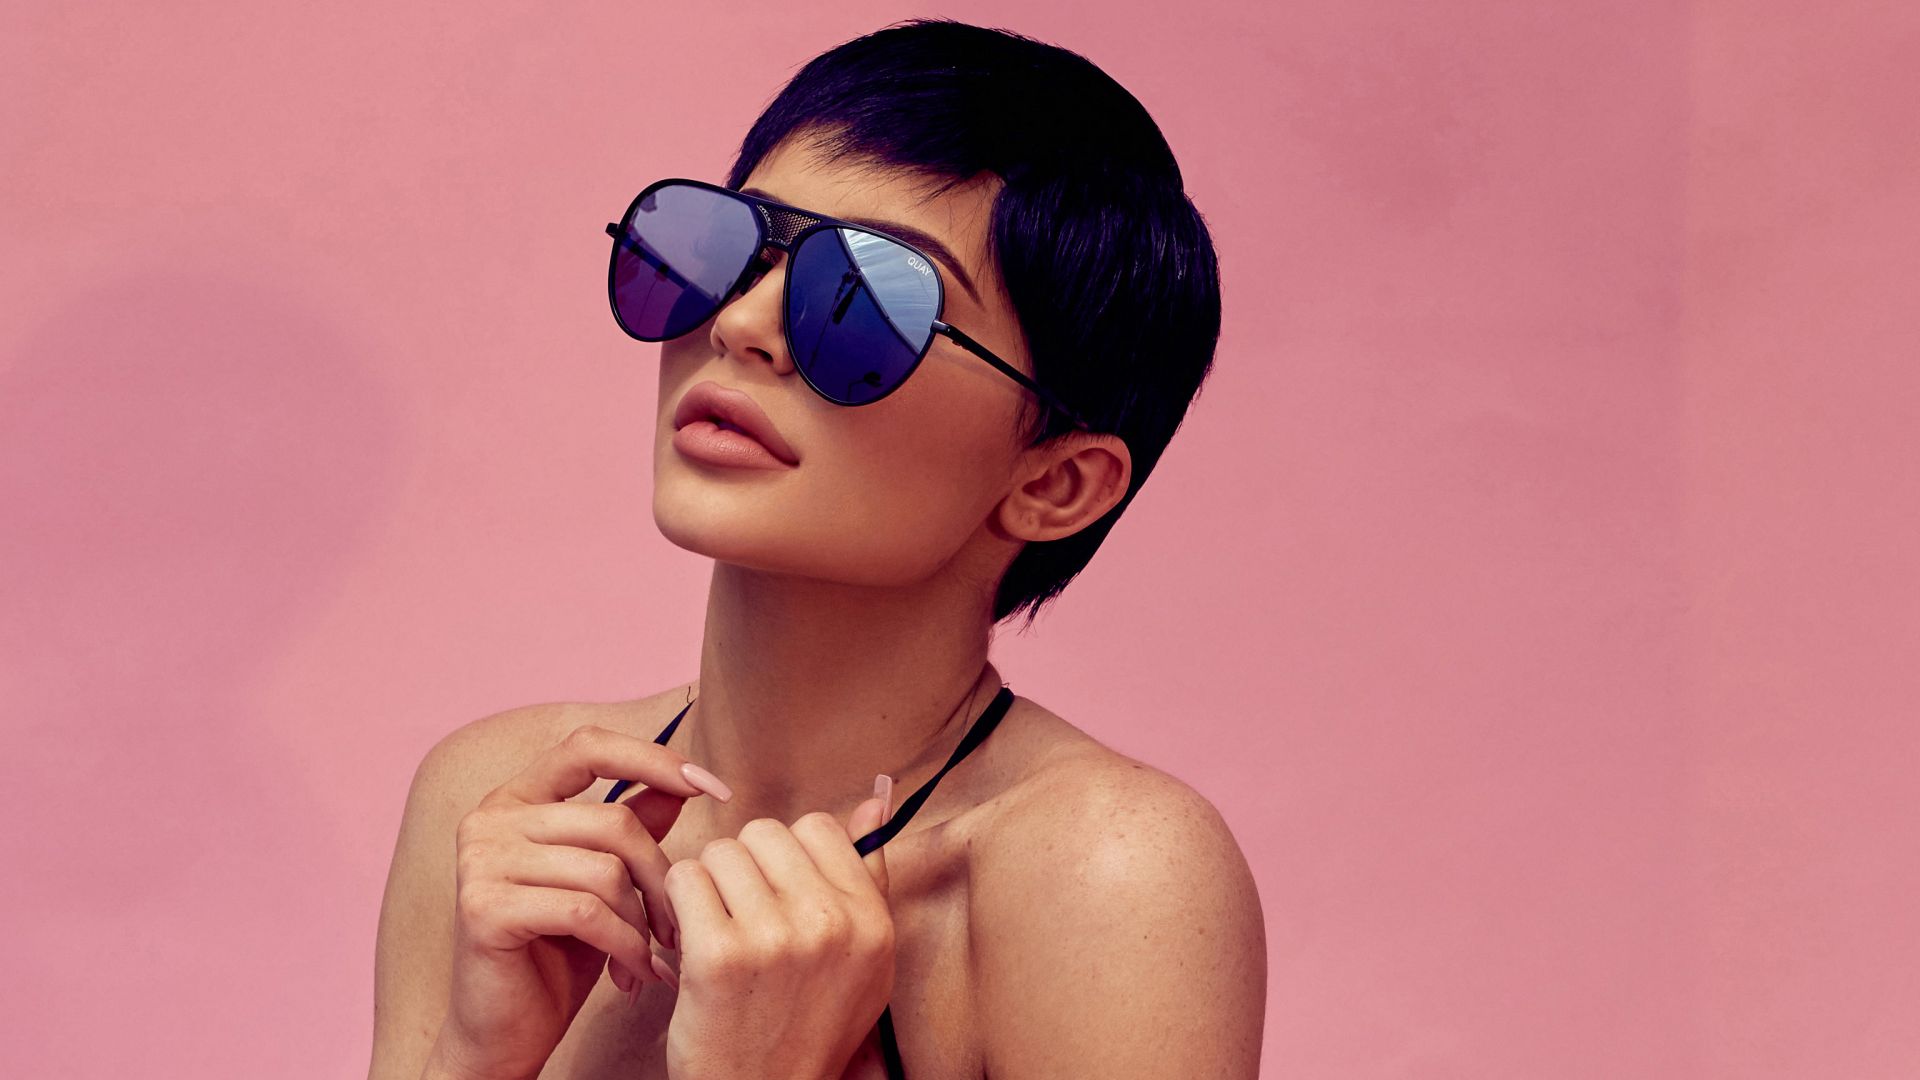 Wallpaper Kylie jenner, sunglasses, short hair, 4k